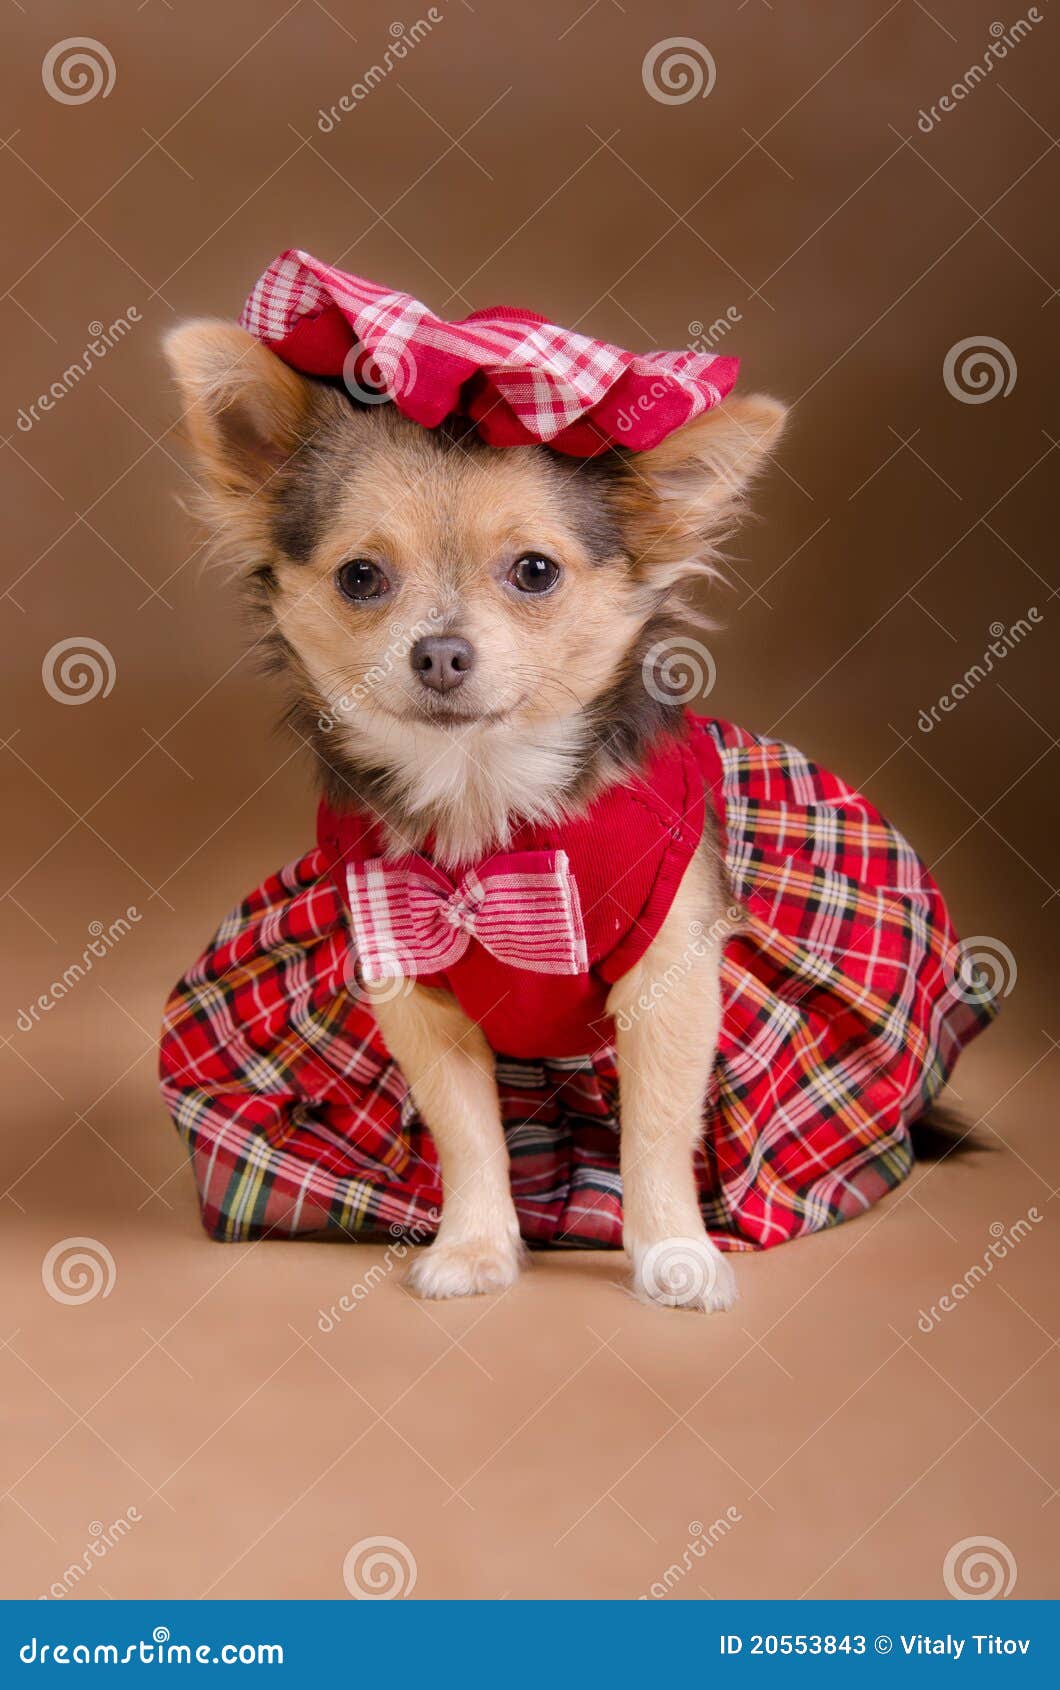 auditie Vermelding aardolie Het Puppy Dat Van Chihuahua Rode Kleding En GLB Draagt Stock Afbeelding -  Image of gipsplaat, katoen: 20553843